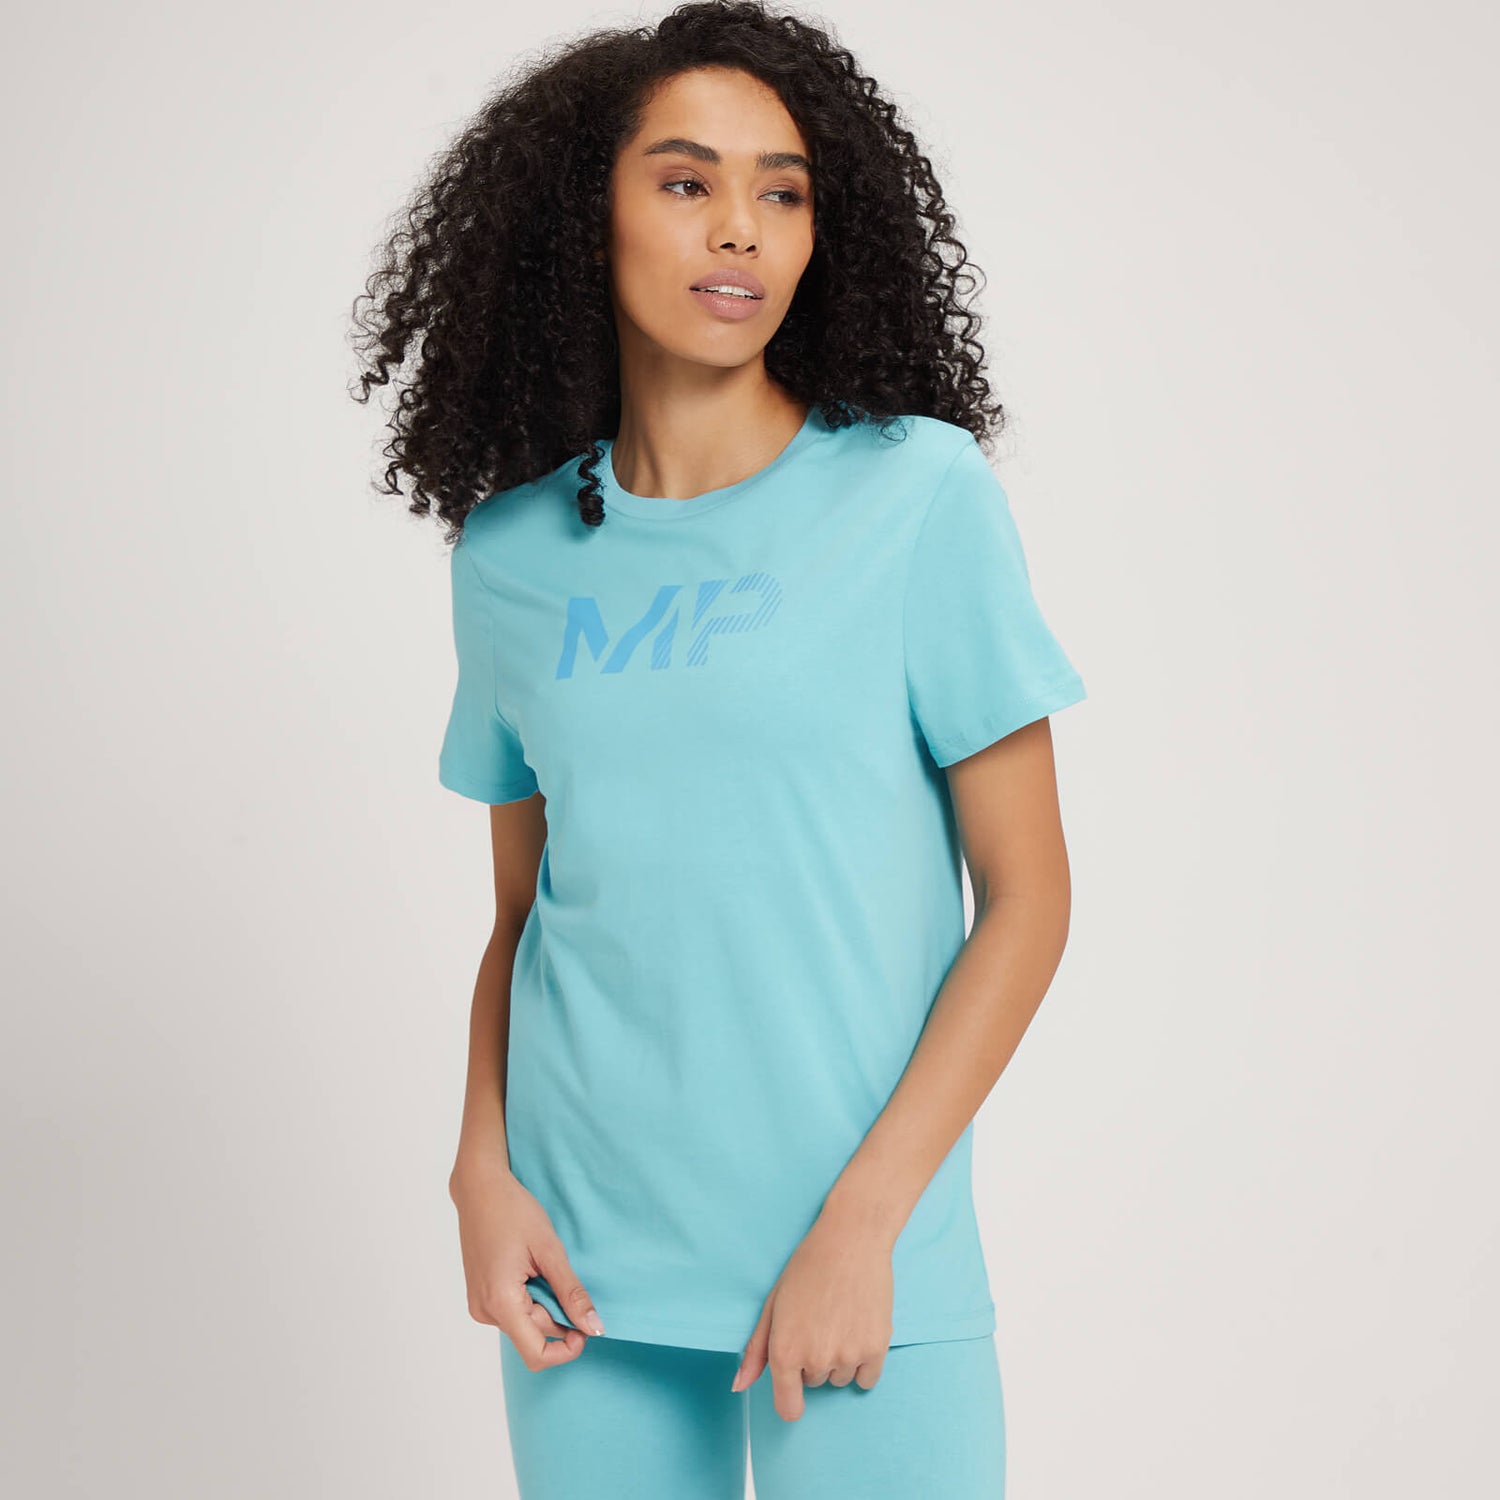 Camiseta con estampado gráfico gradual para mujer de MP - Azul cielo